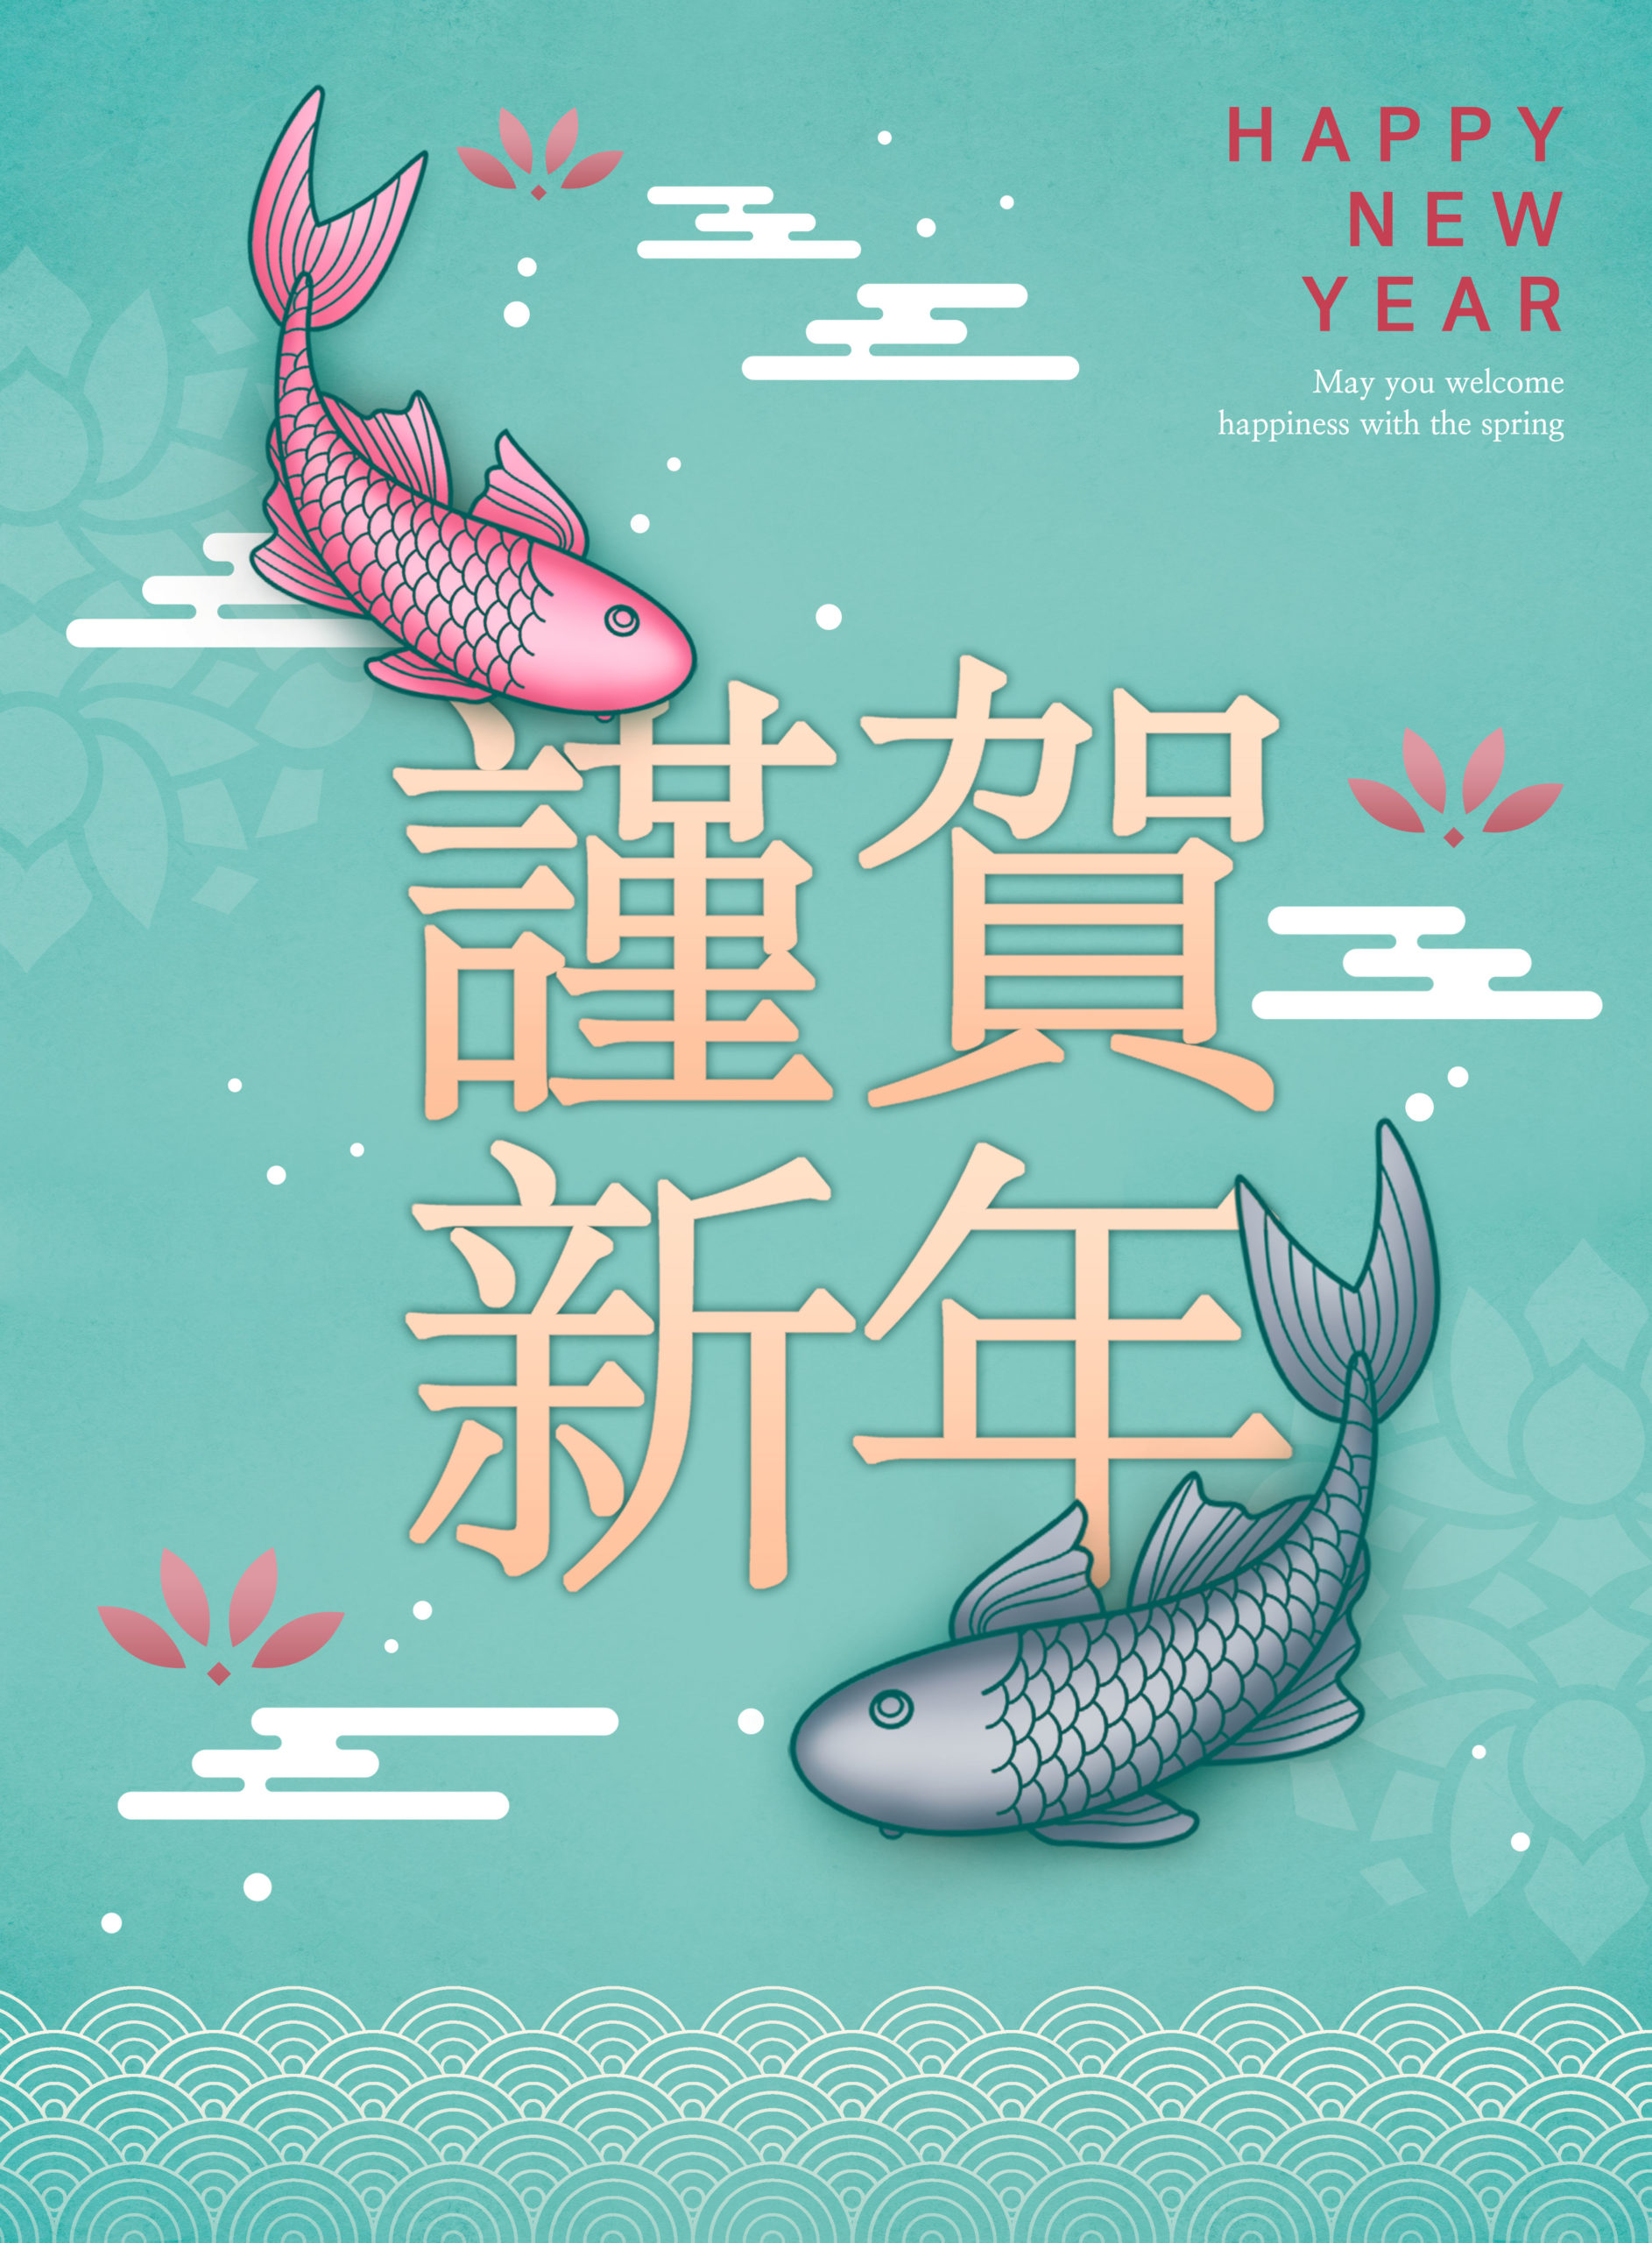 中国元素好运锦鲤新年主题海报PSD素材16图库精选模板插图